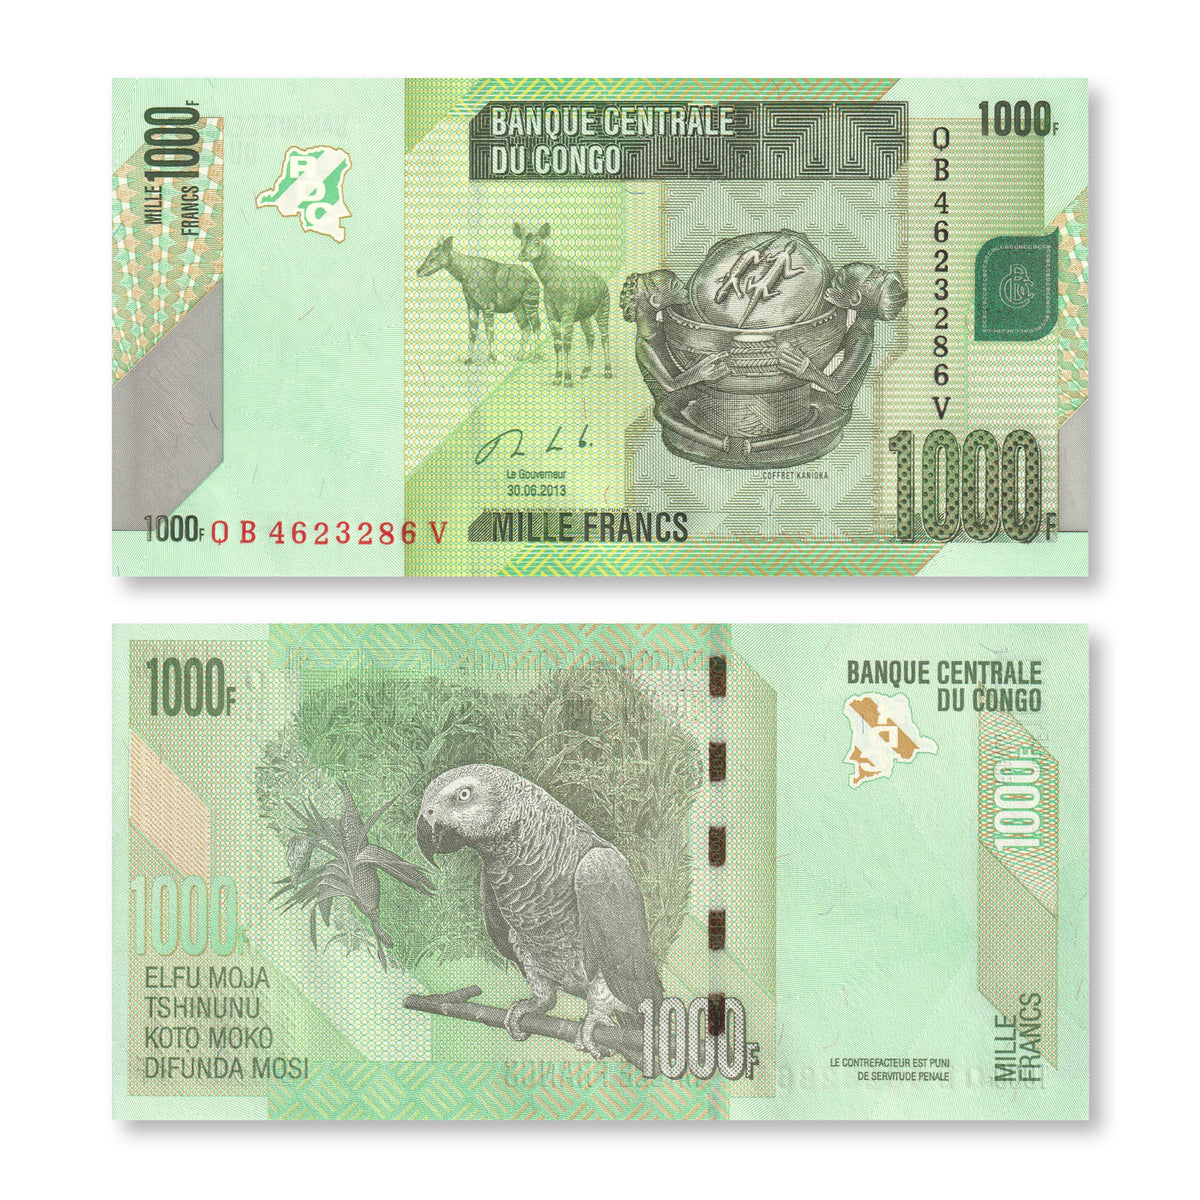 Congo Democratic Republic 1000 Francs, 2013, B323b, P101, UNC - Robert's World Money - World Banknotes